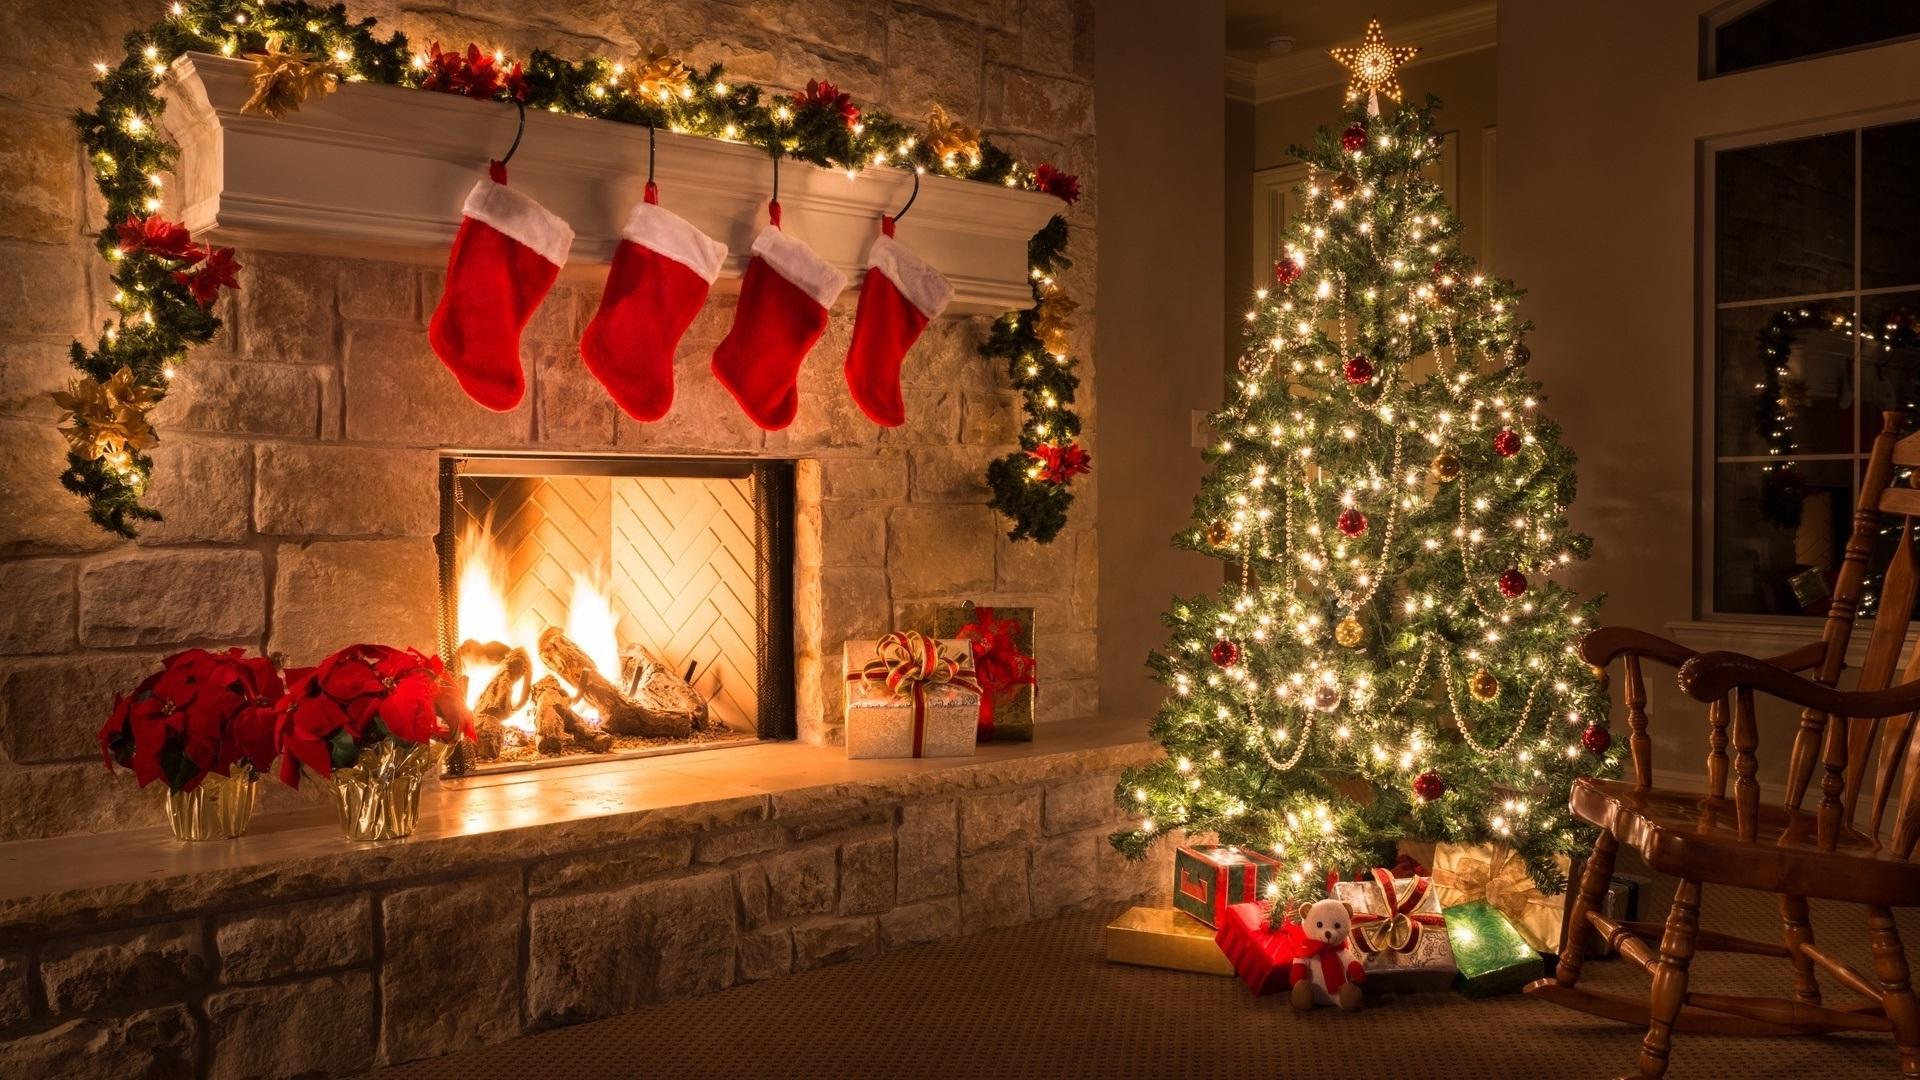 Hãy cập nhật tường nền Giáng sinh cho ngôi nhà của bạn để mang đến không gian ấm cúng, lãng mạn trong mùa lễ hội đầy thú vị này. Hình ảnh tường nền giáng sinh nhà cửa sẽ giúp cho ngôi nhà của bạn trở nên lung linh và rực rỡ hơn bao giờ hết.